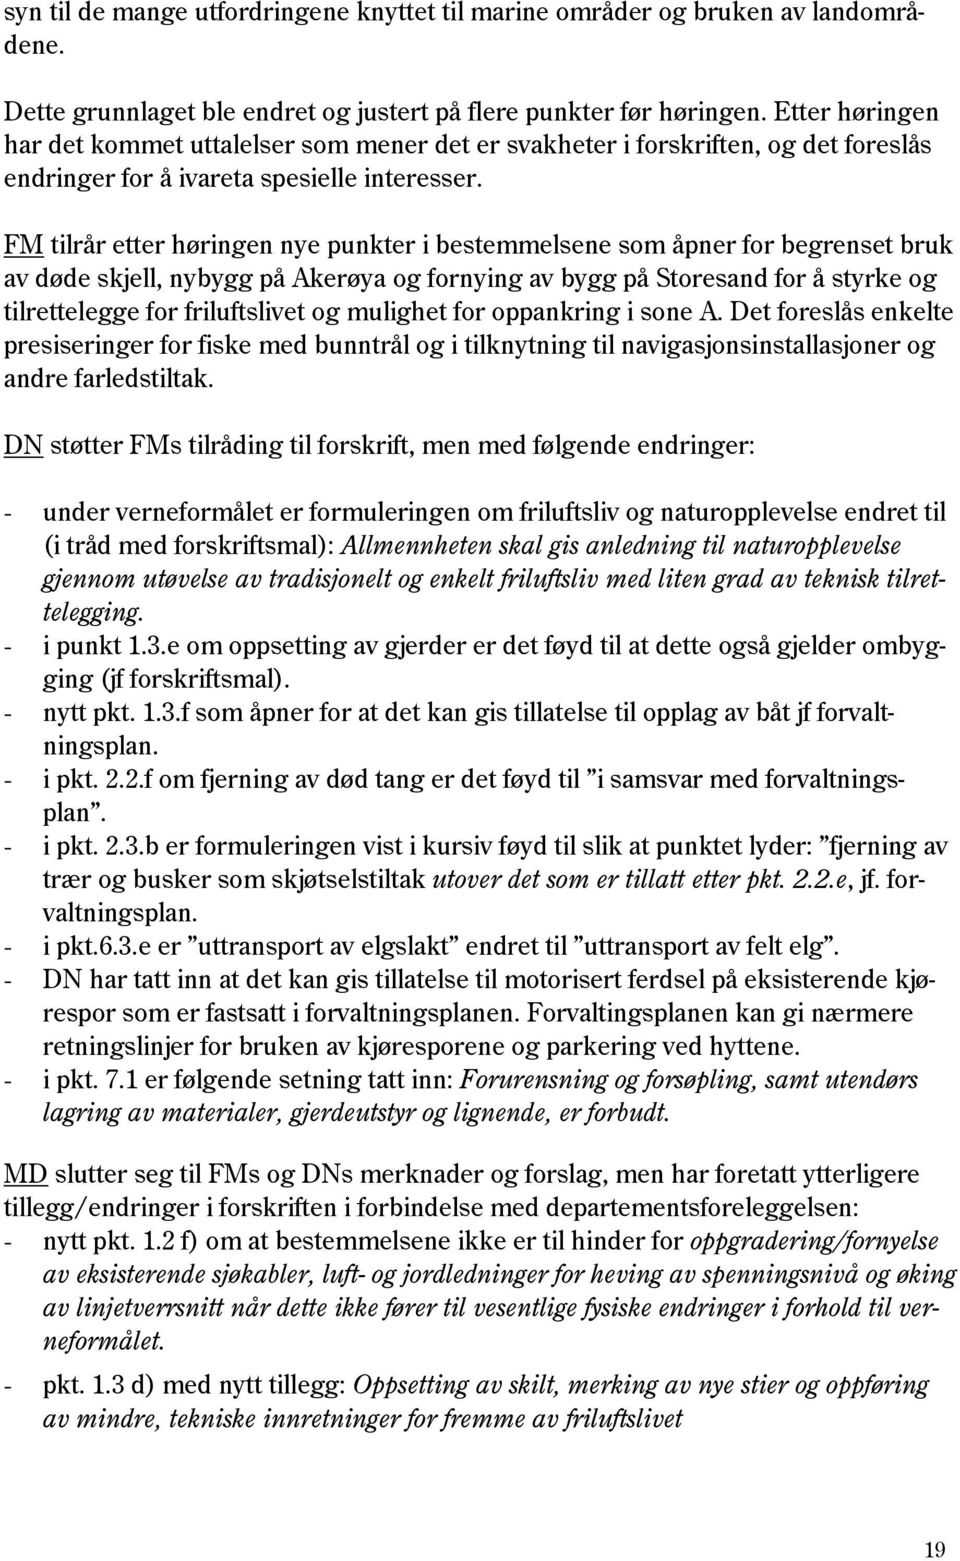 FM tilrår etter høringen nye punkter i bestemmelsene som åpner for begrenset bruk av døde skjell, nybygg på Akerøya og fornying av bygg på Storesand for å styrke og tilrettelegge for friluftslivet og